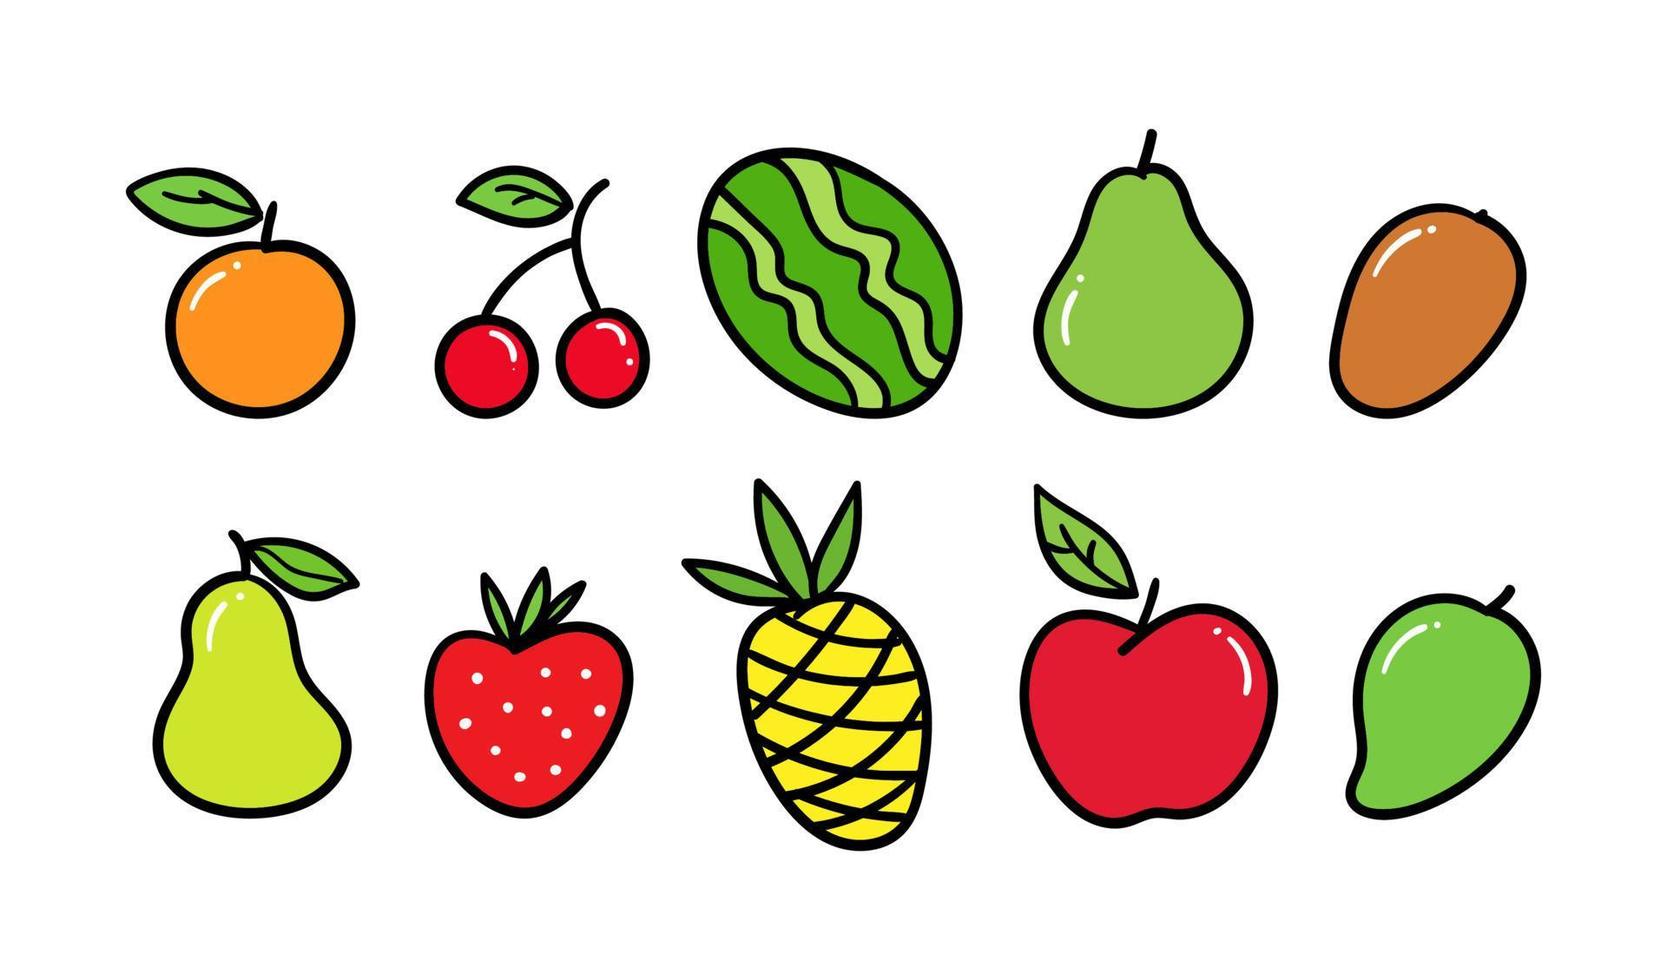 colorida colección de frutas de verano dibujadas a mano. ilustración de frutas tropicales frescas naturales vector